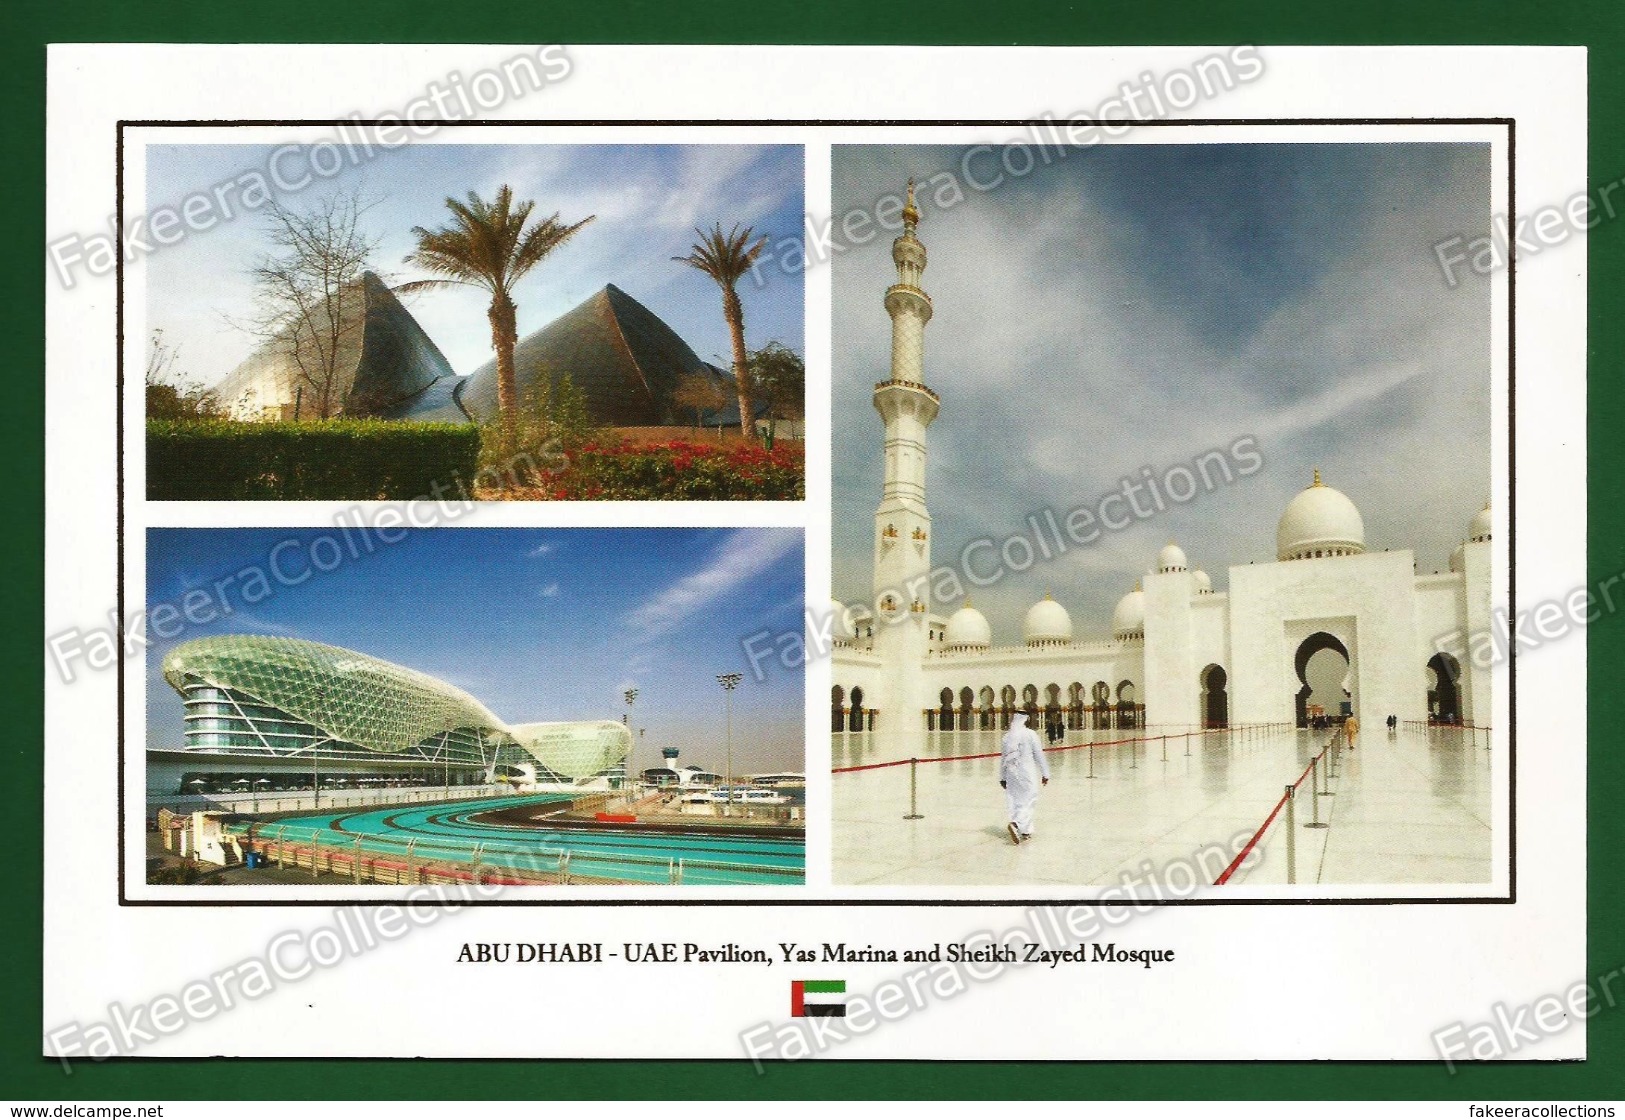 UNITED ARAB EMIRATES / UAE - ABU DHABI Pavilion, Yas Marina And Sheikh Zayed Mosque - Postcard # 48 - Unused As Scan - United Arab Emirates